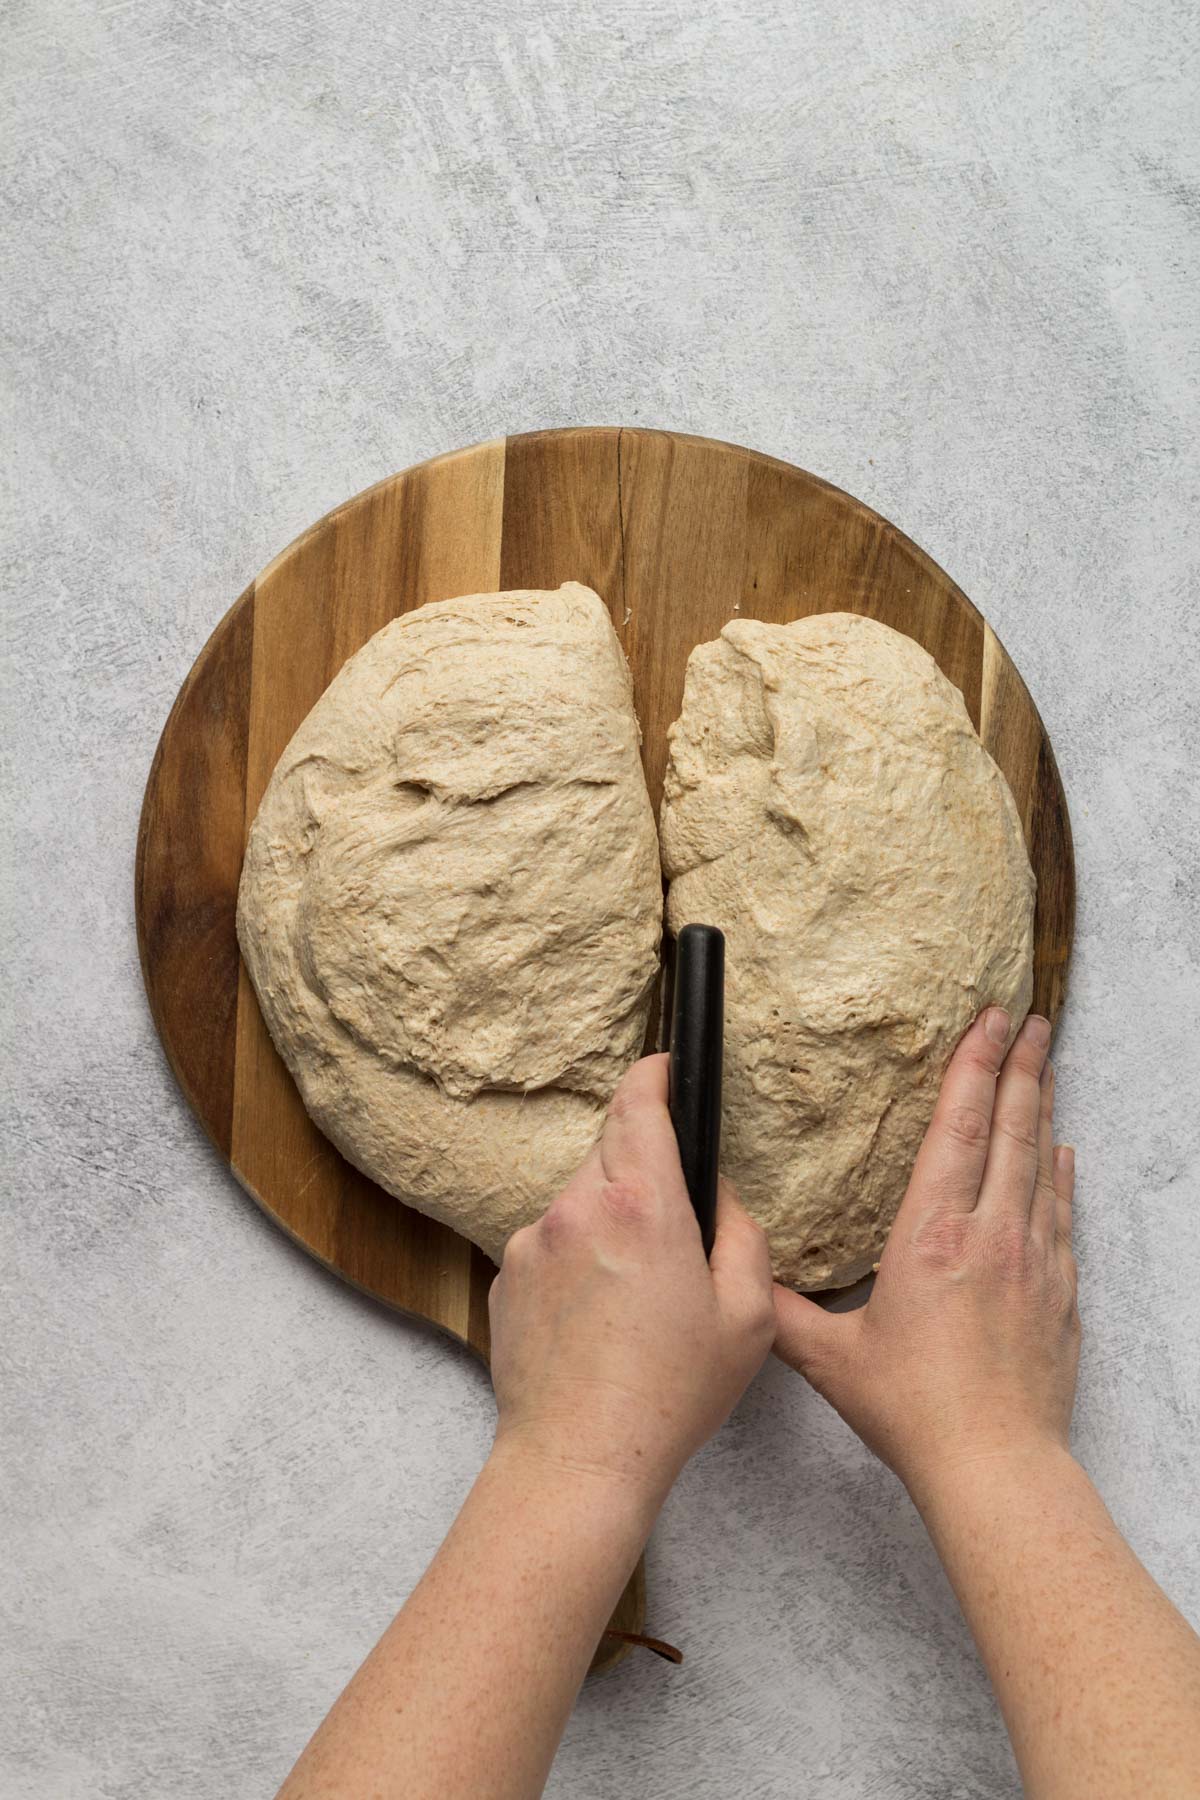 Cutting bread dough in half with a bench scraper